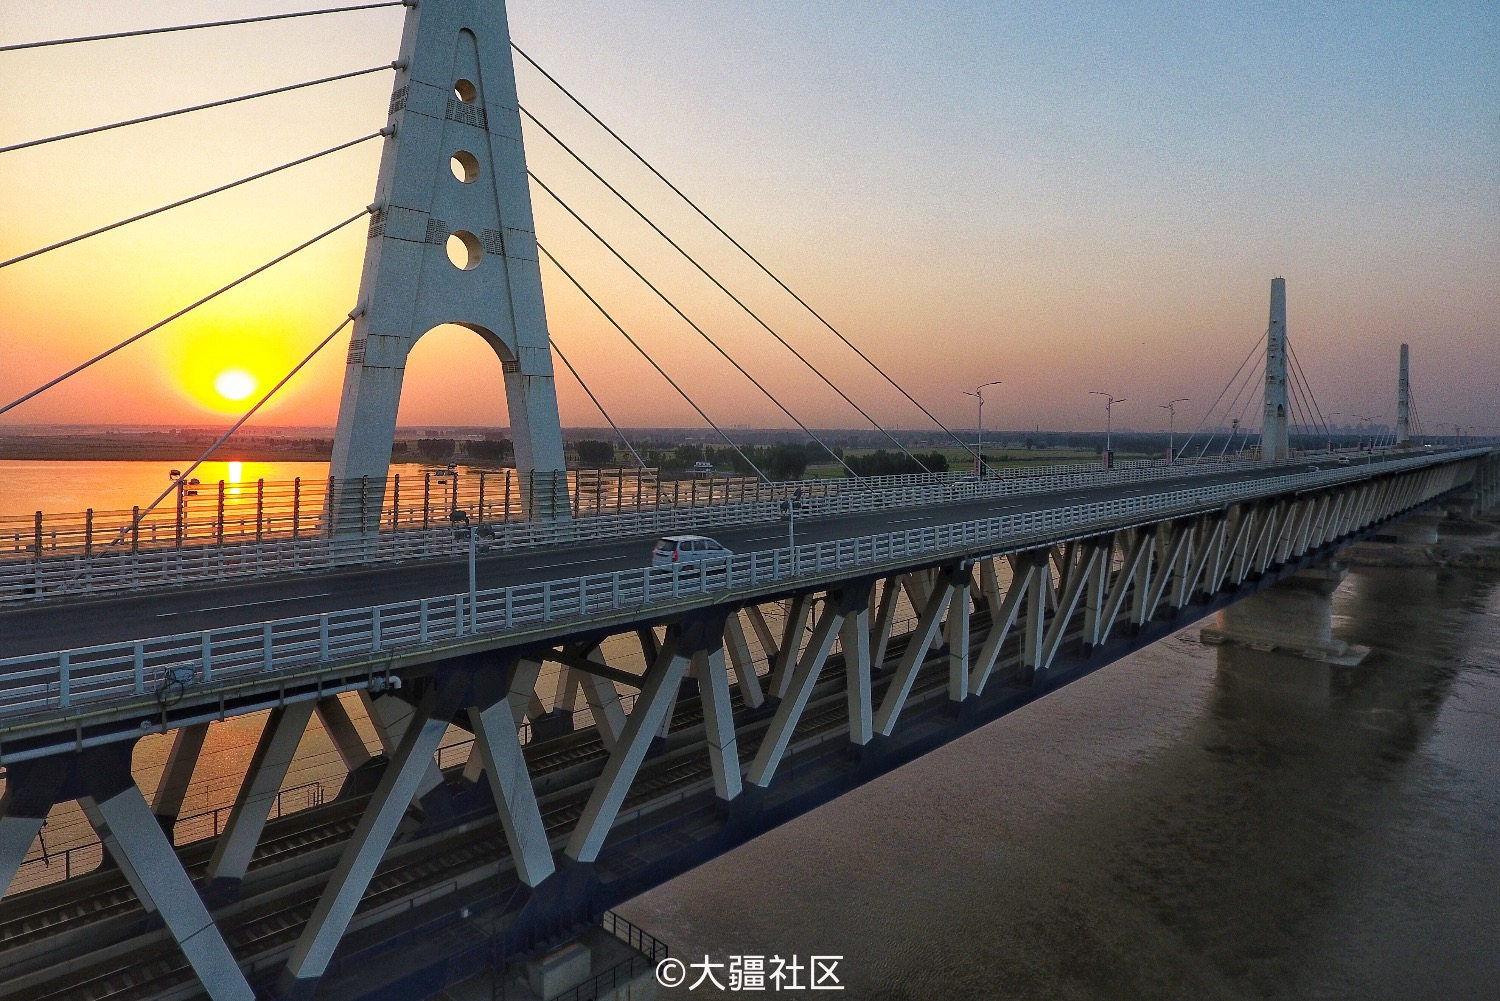 用两周的时间,拍了河南境内的4座黄河大桥